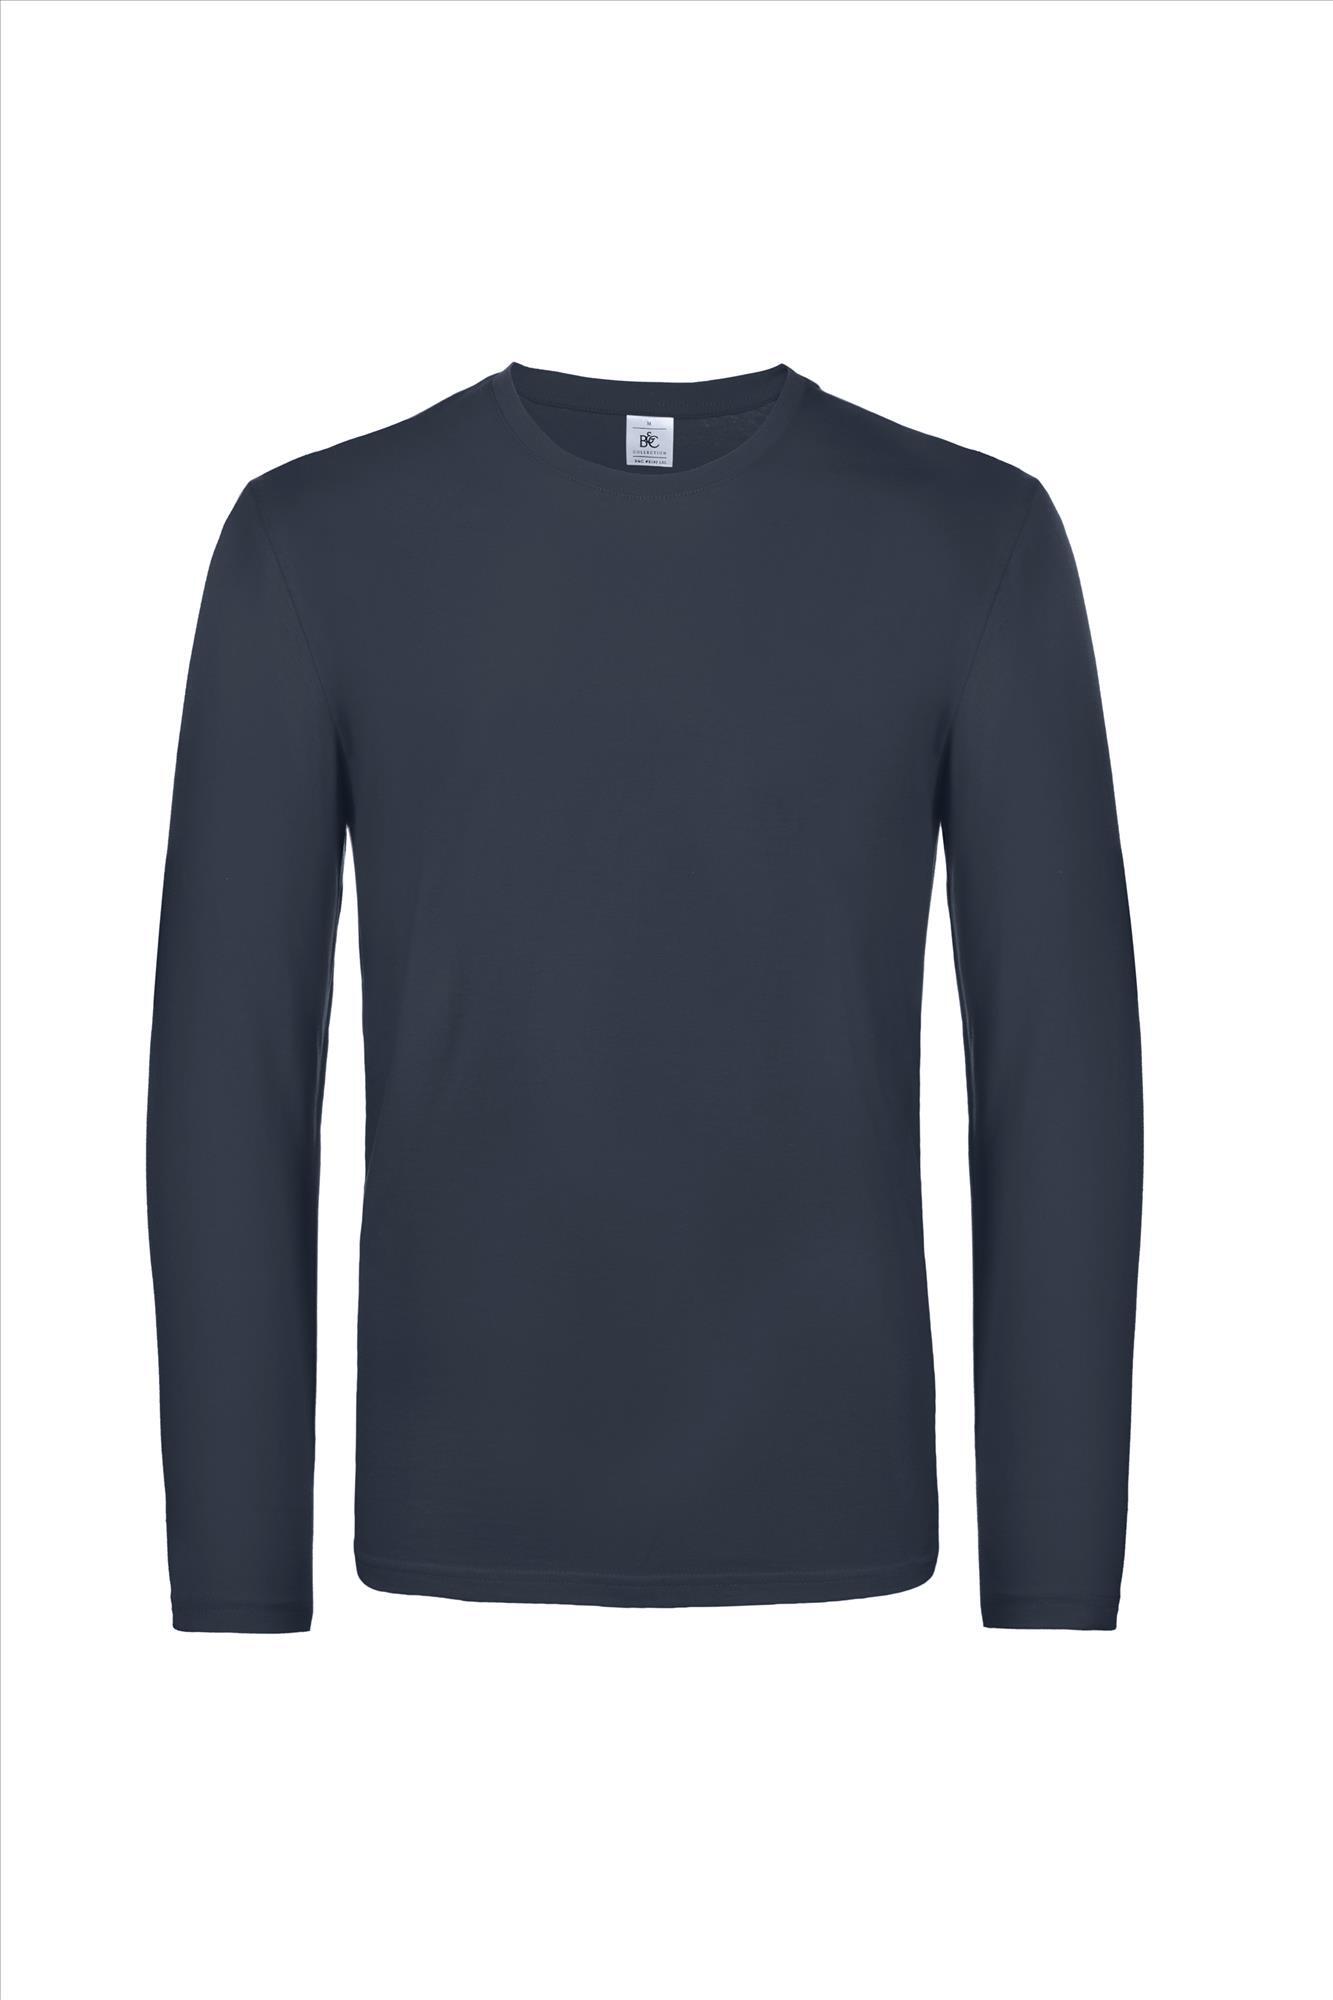 Modern zware kwaliteit heren T-shirt met lange mouwen donkerblauw te personaliseren